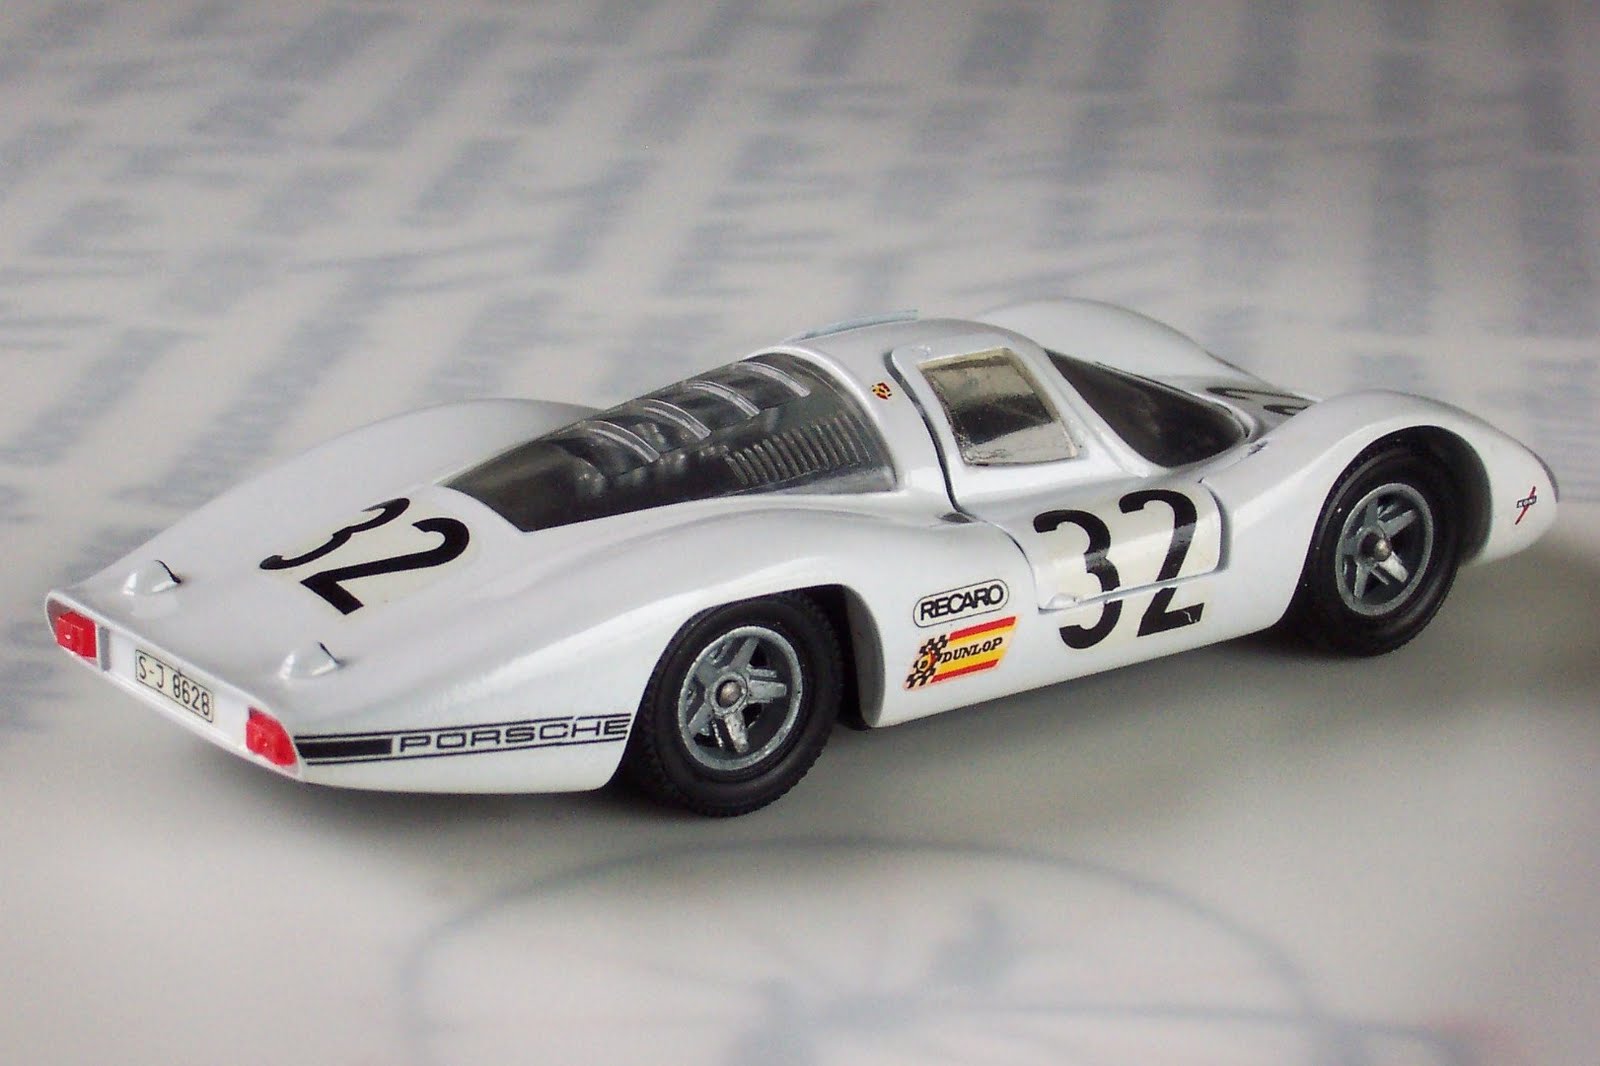 1-43 Porsche Models: Porsche 907 LH